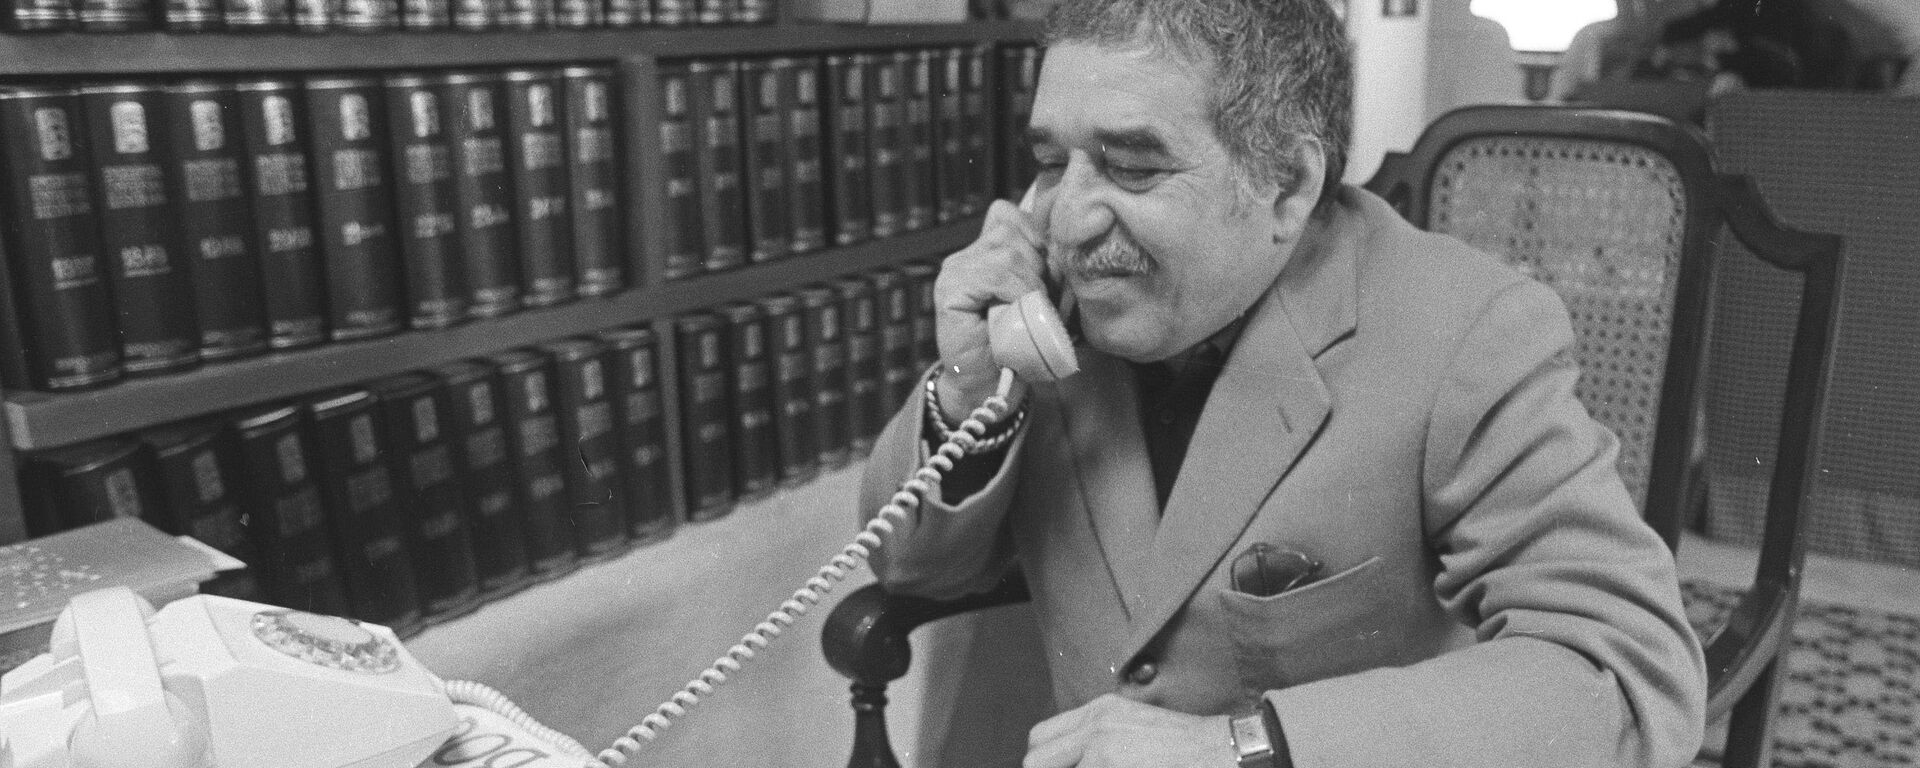 Gabriel García Márquez, escritor colombiano - Sputnik Mundo, 1920, 06.03.2020